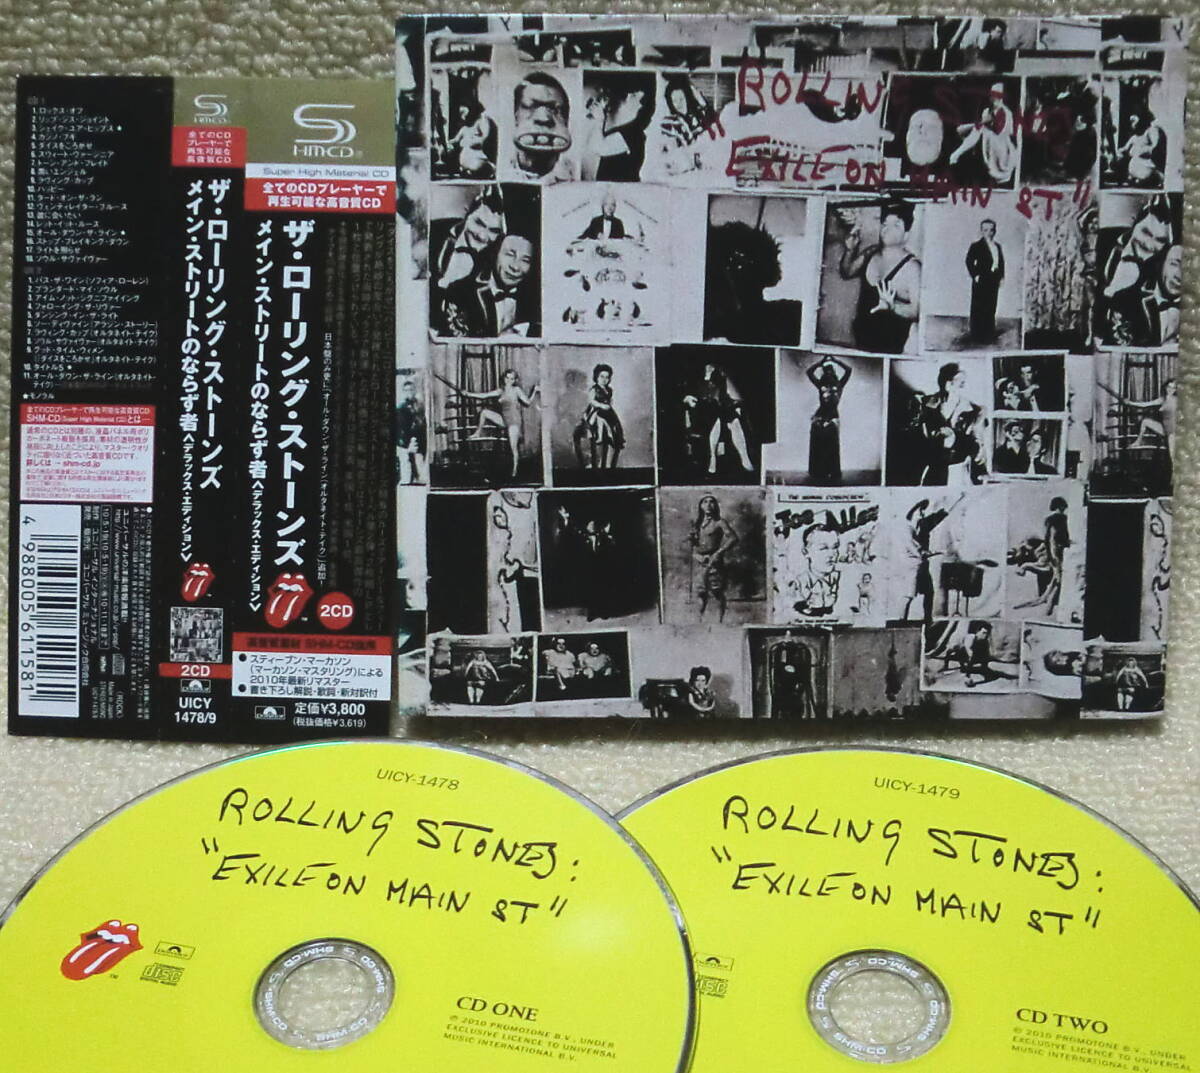  быстрое решение![2 пункт бесплатная доставка ]SHM-CD 2 листов комплект low кольцо * Stone zRolling Stones Exile on Main St если . человек с поясом оби не departure таблица бонус запись .